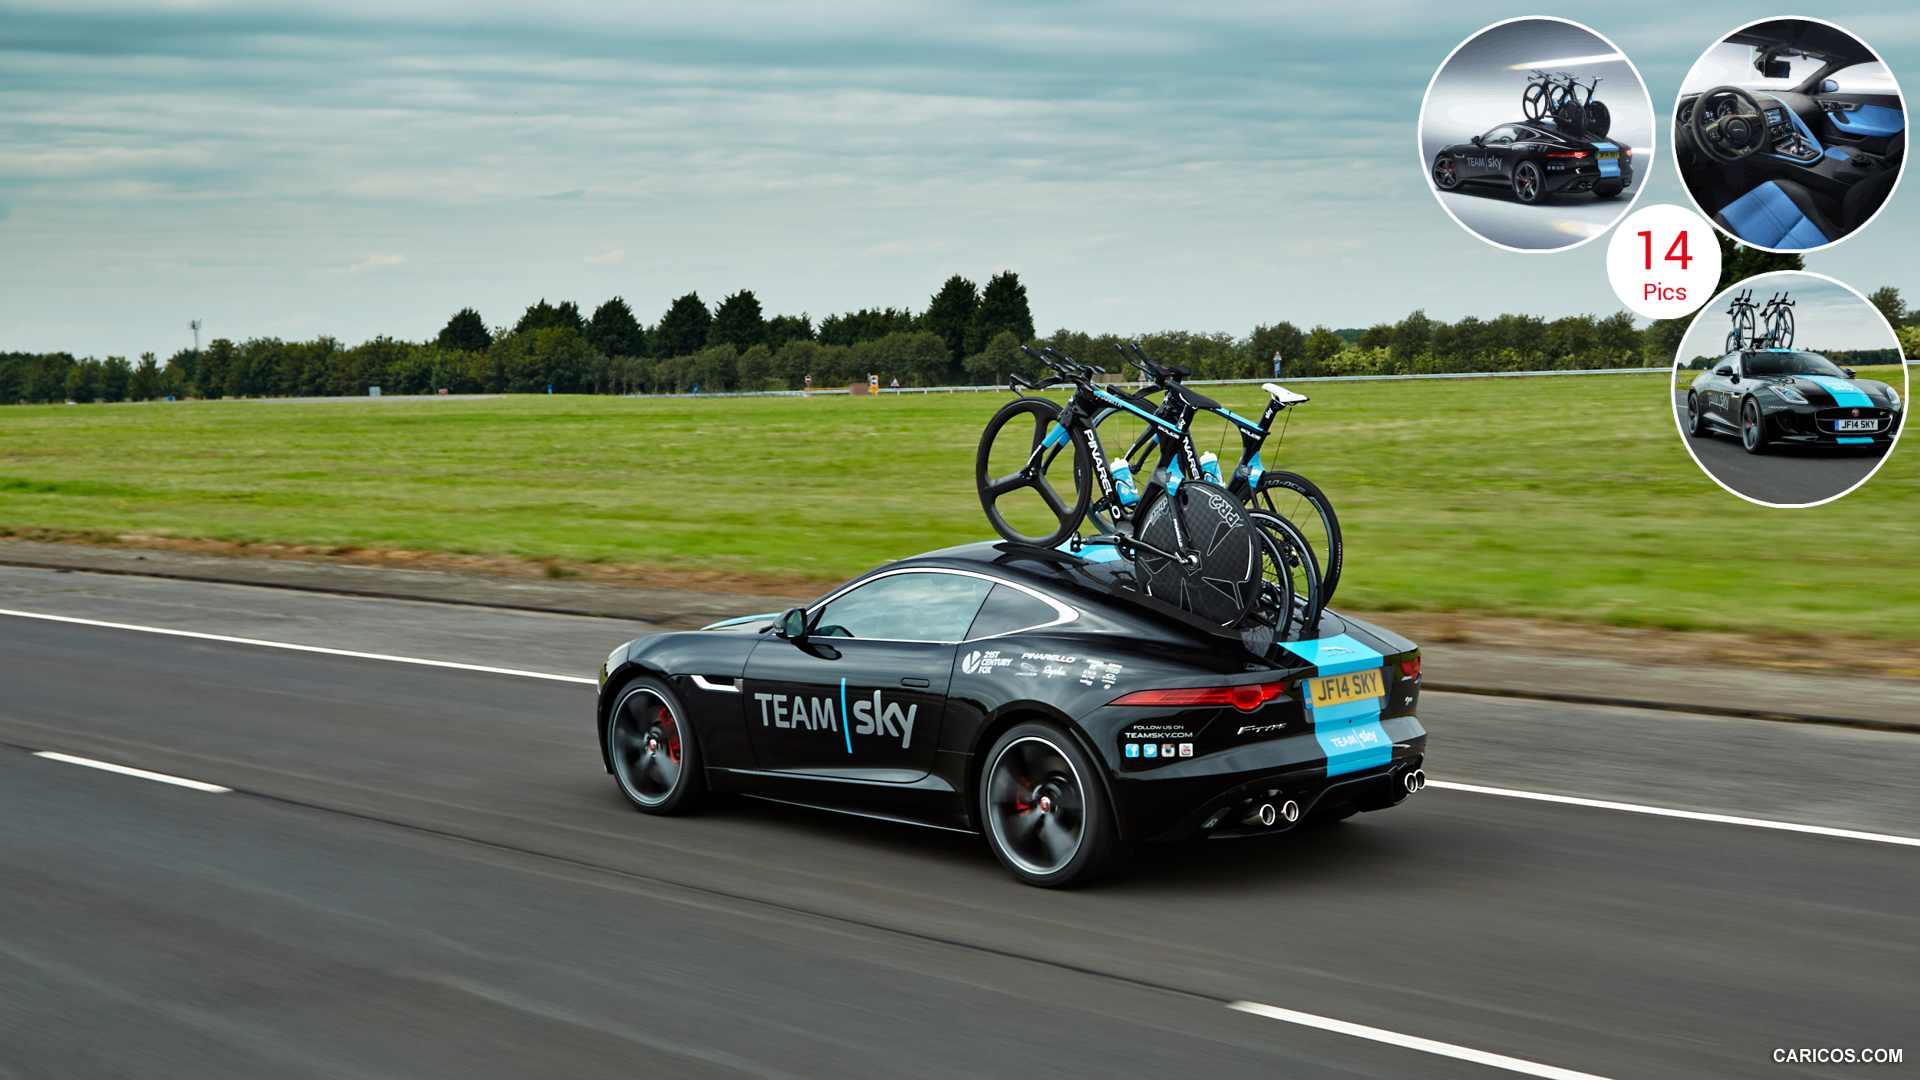 2014 Jaguar F-Type Team Sky Tour de France Concept - Rear | HD ...